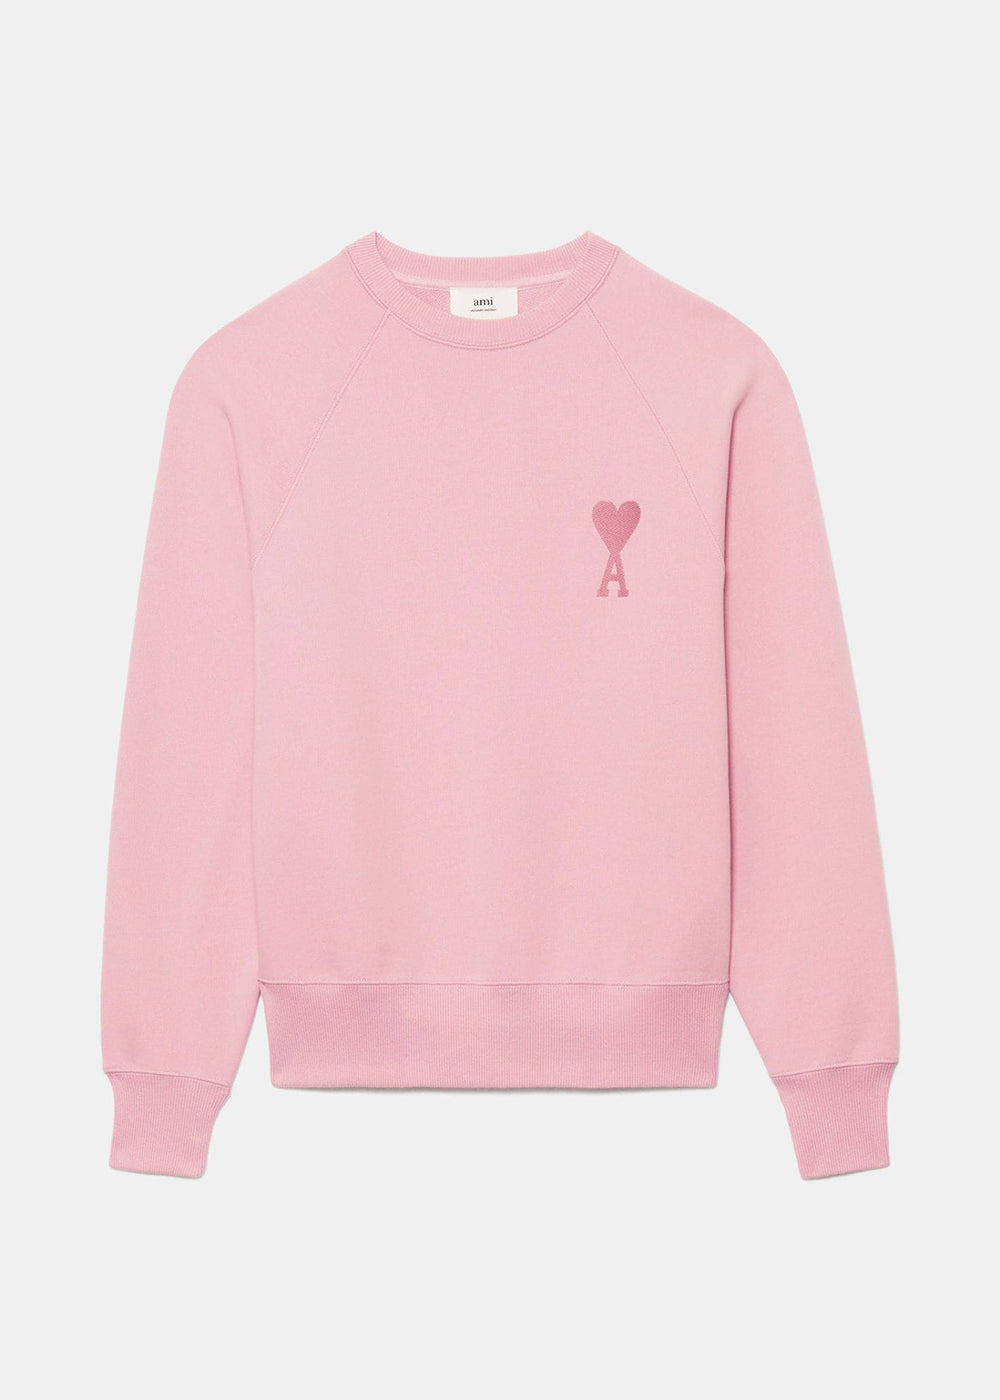 pink chanel sweatshirt